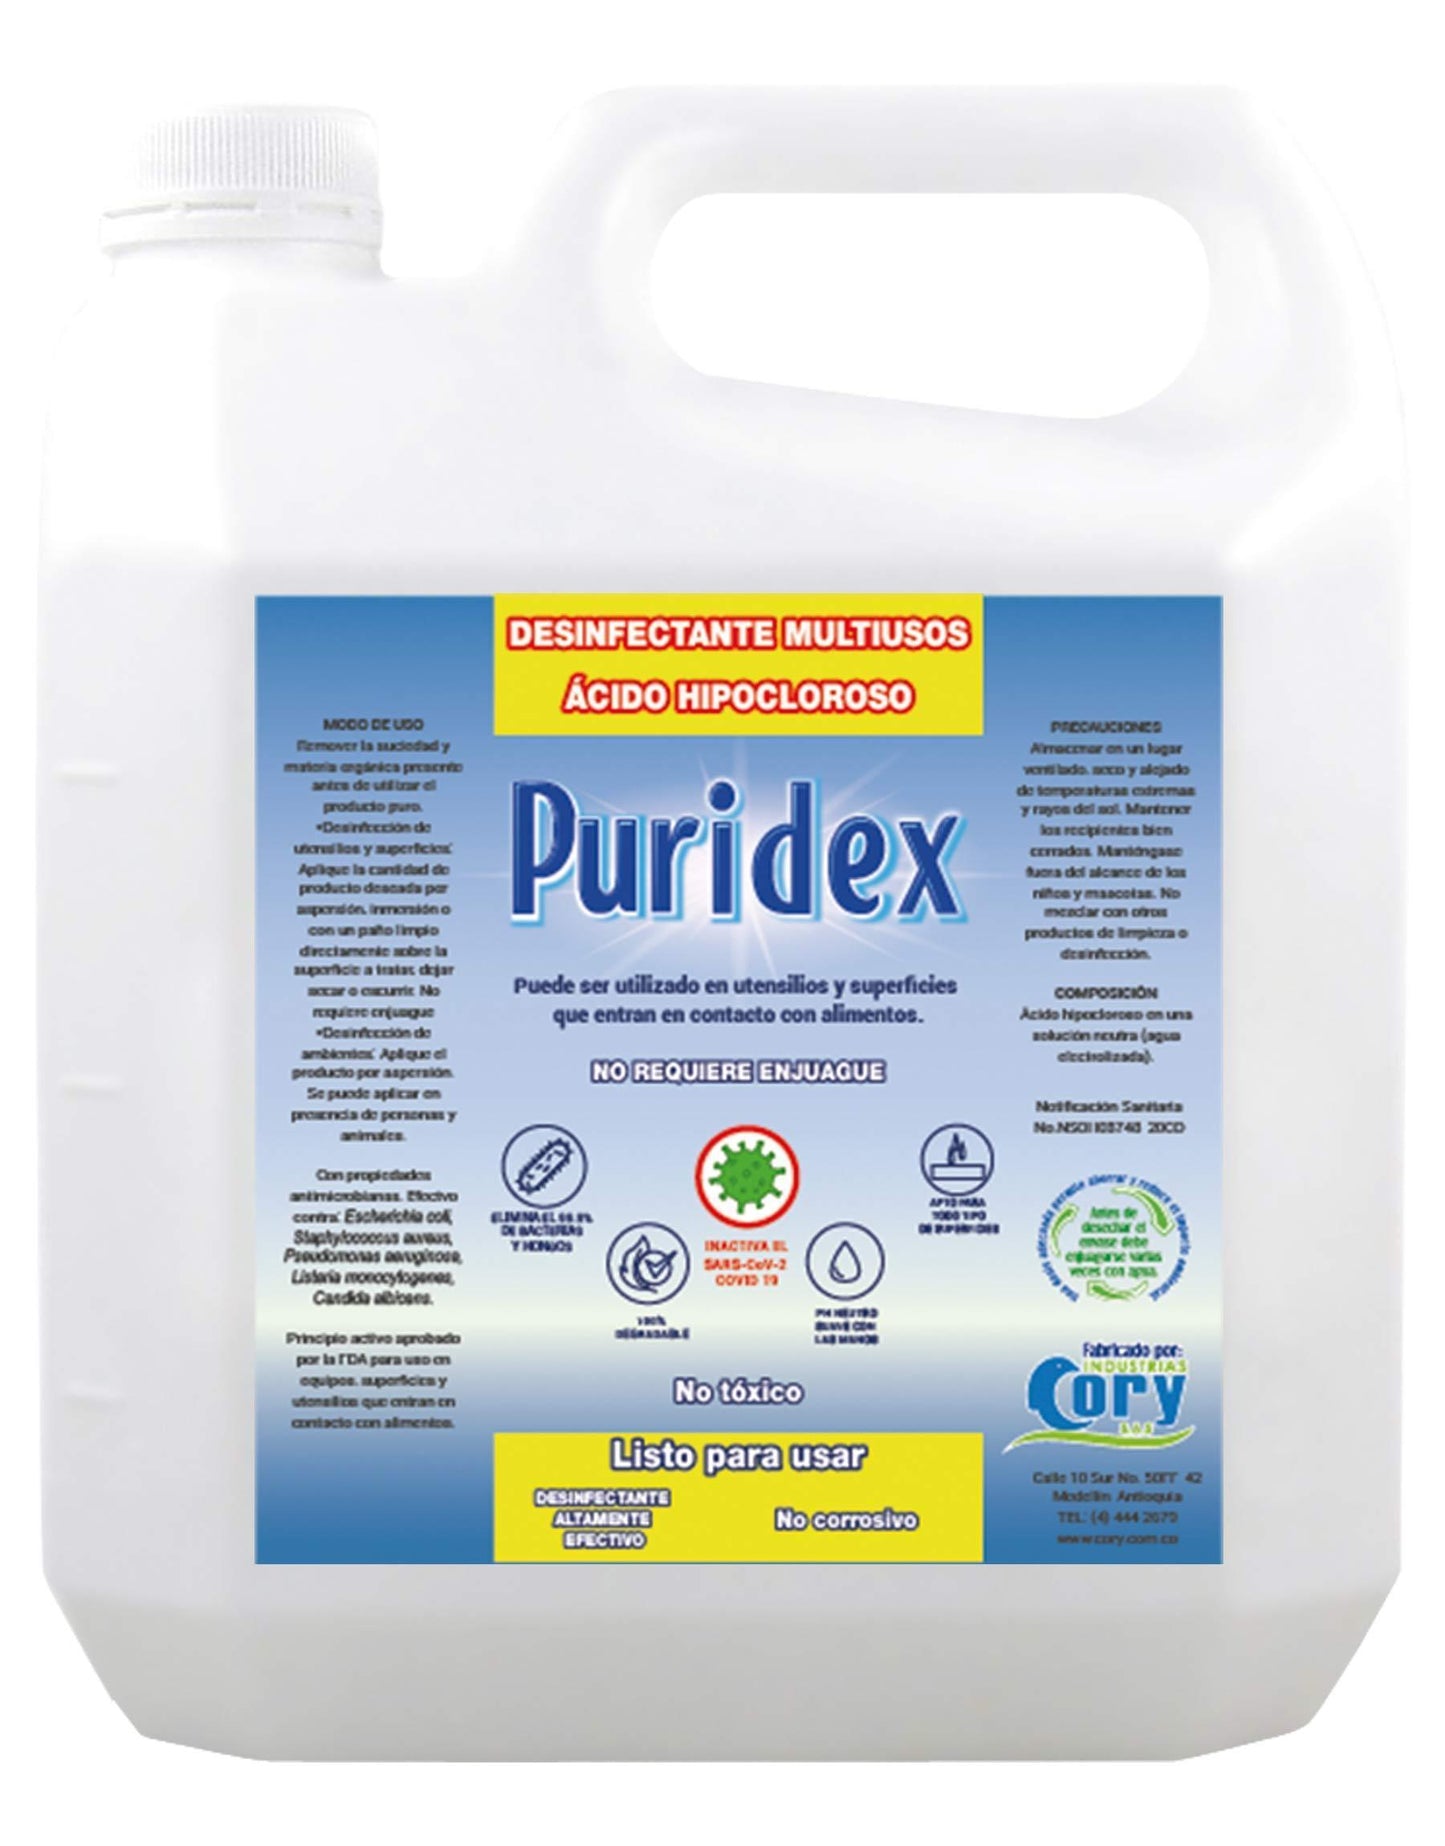 Desinfectante Multiusos Puridex Listo para usar